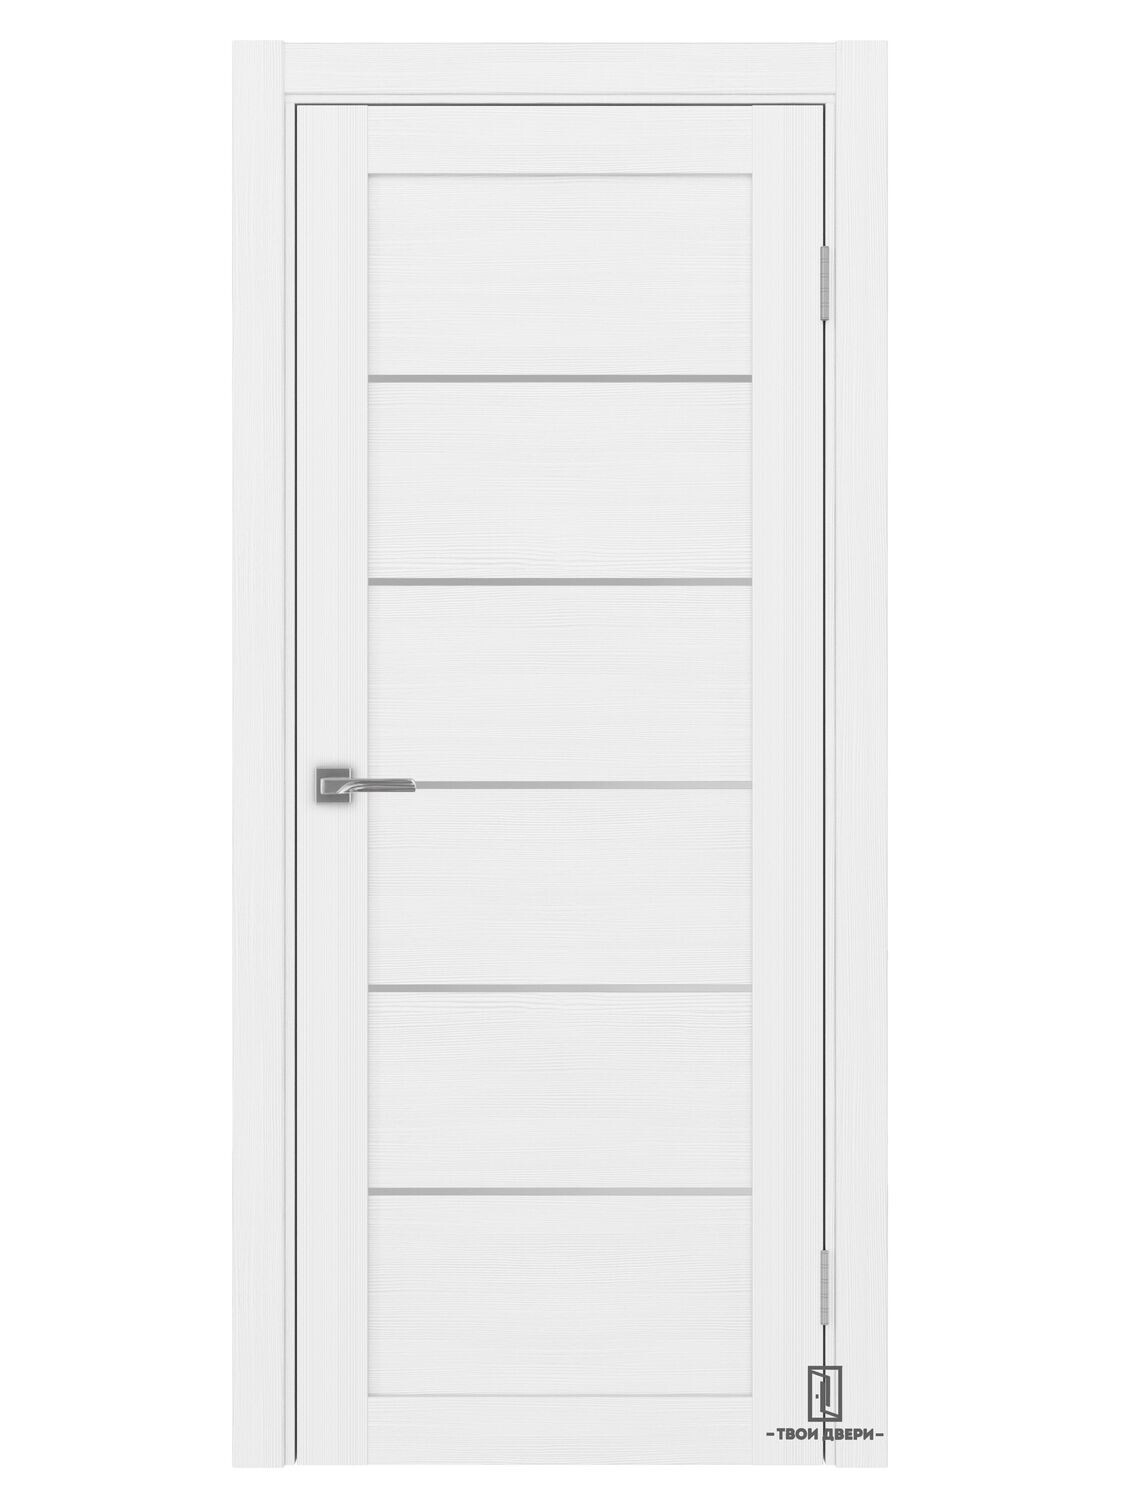 Дверь межкомнатная АПП 501.1 (молдинги), белый лед